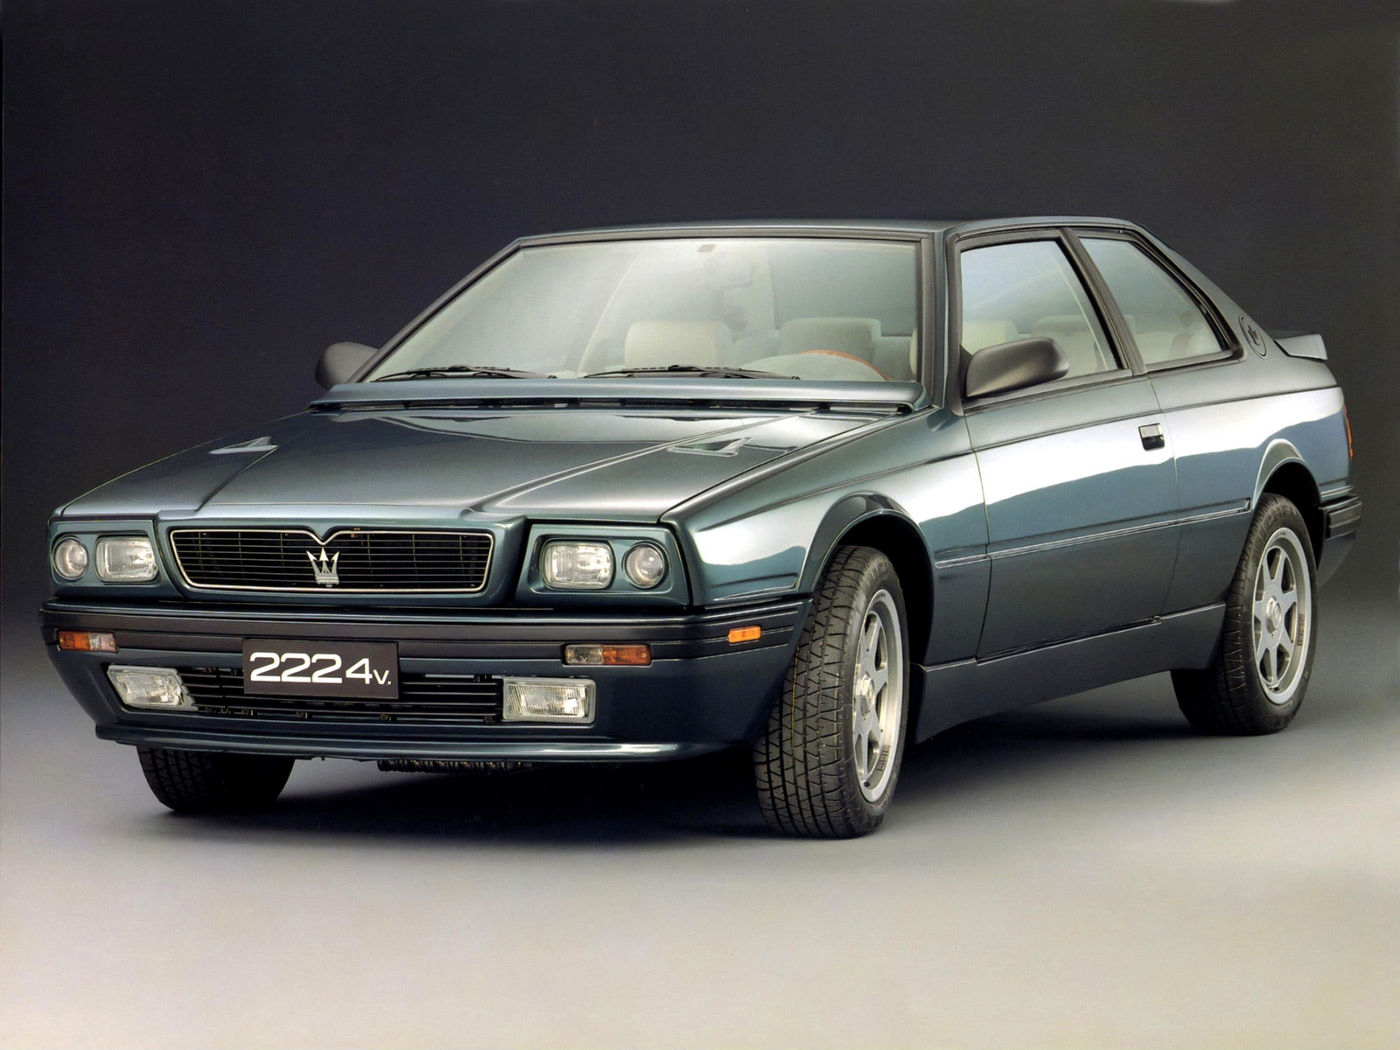 1989 Maserati 222 export - Biturbo - the classic 2-door